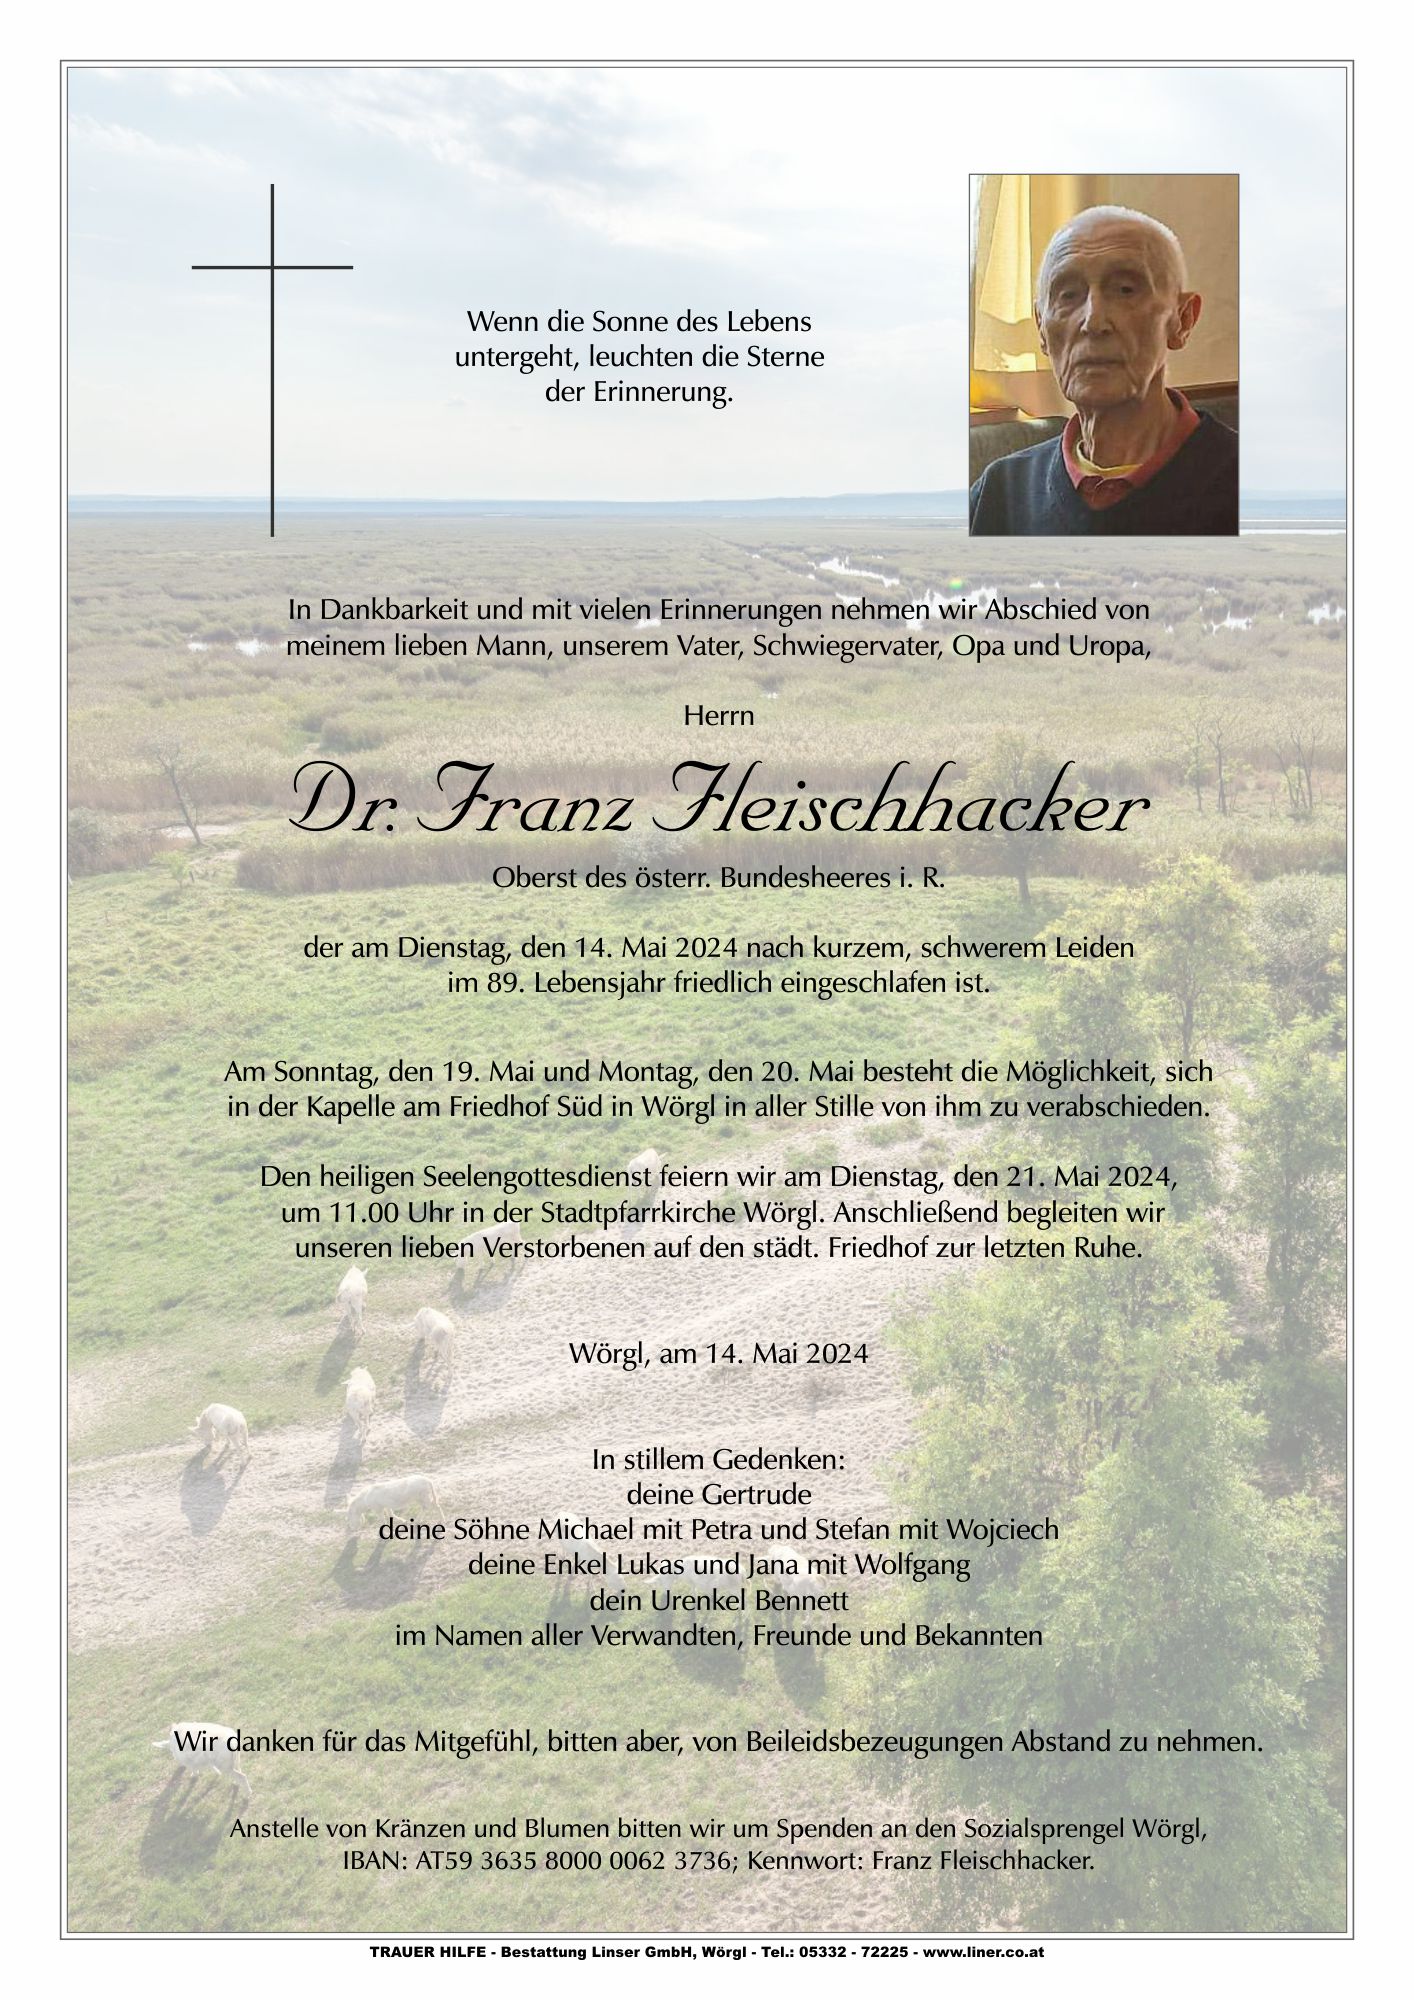 Dr. Franz Fleischhacker